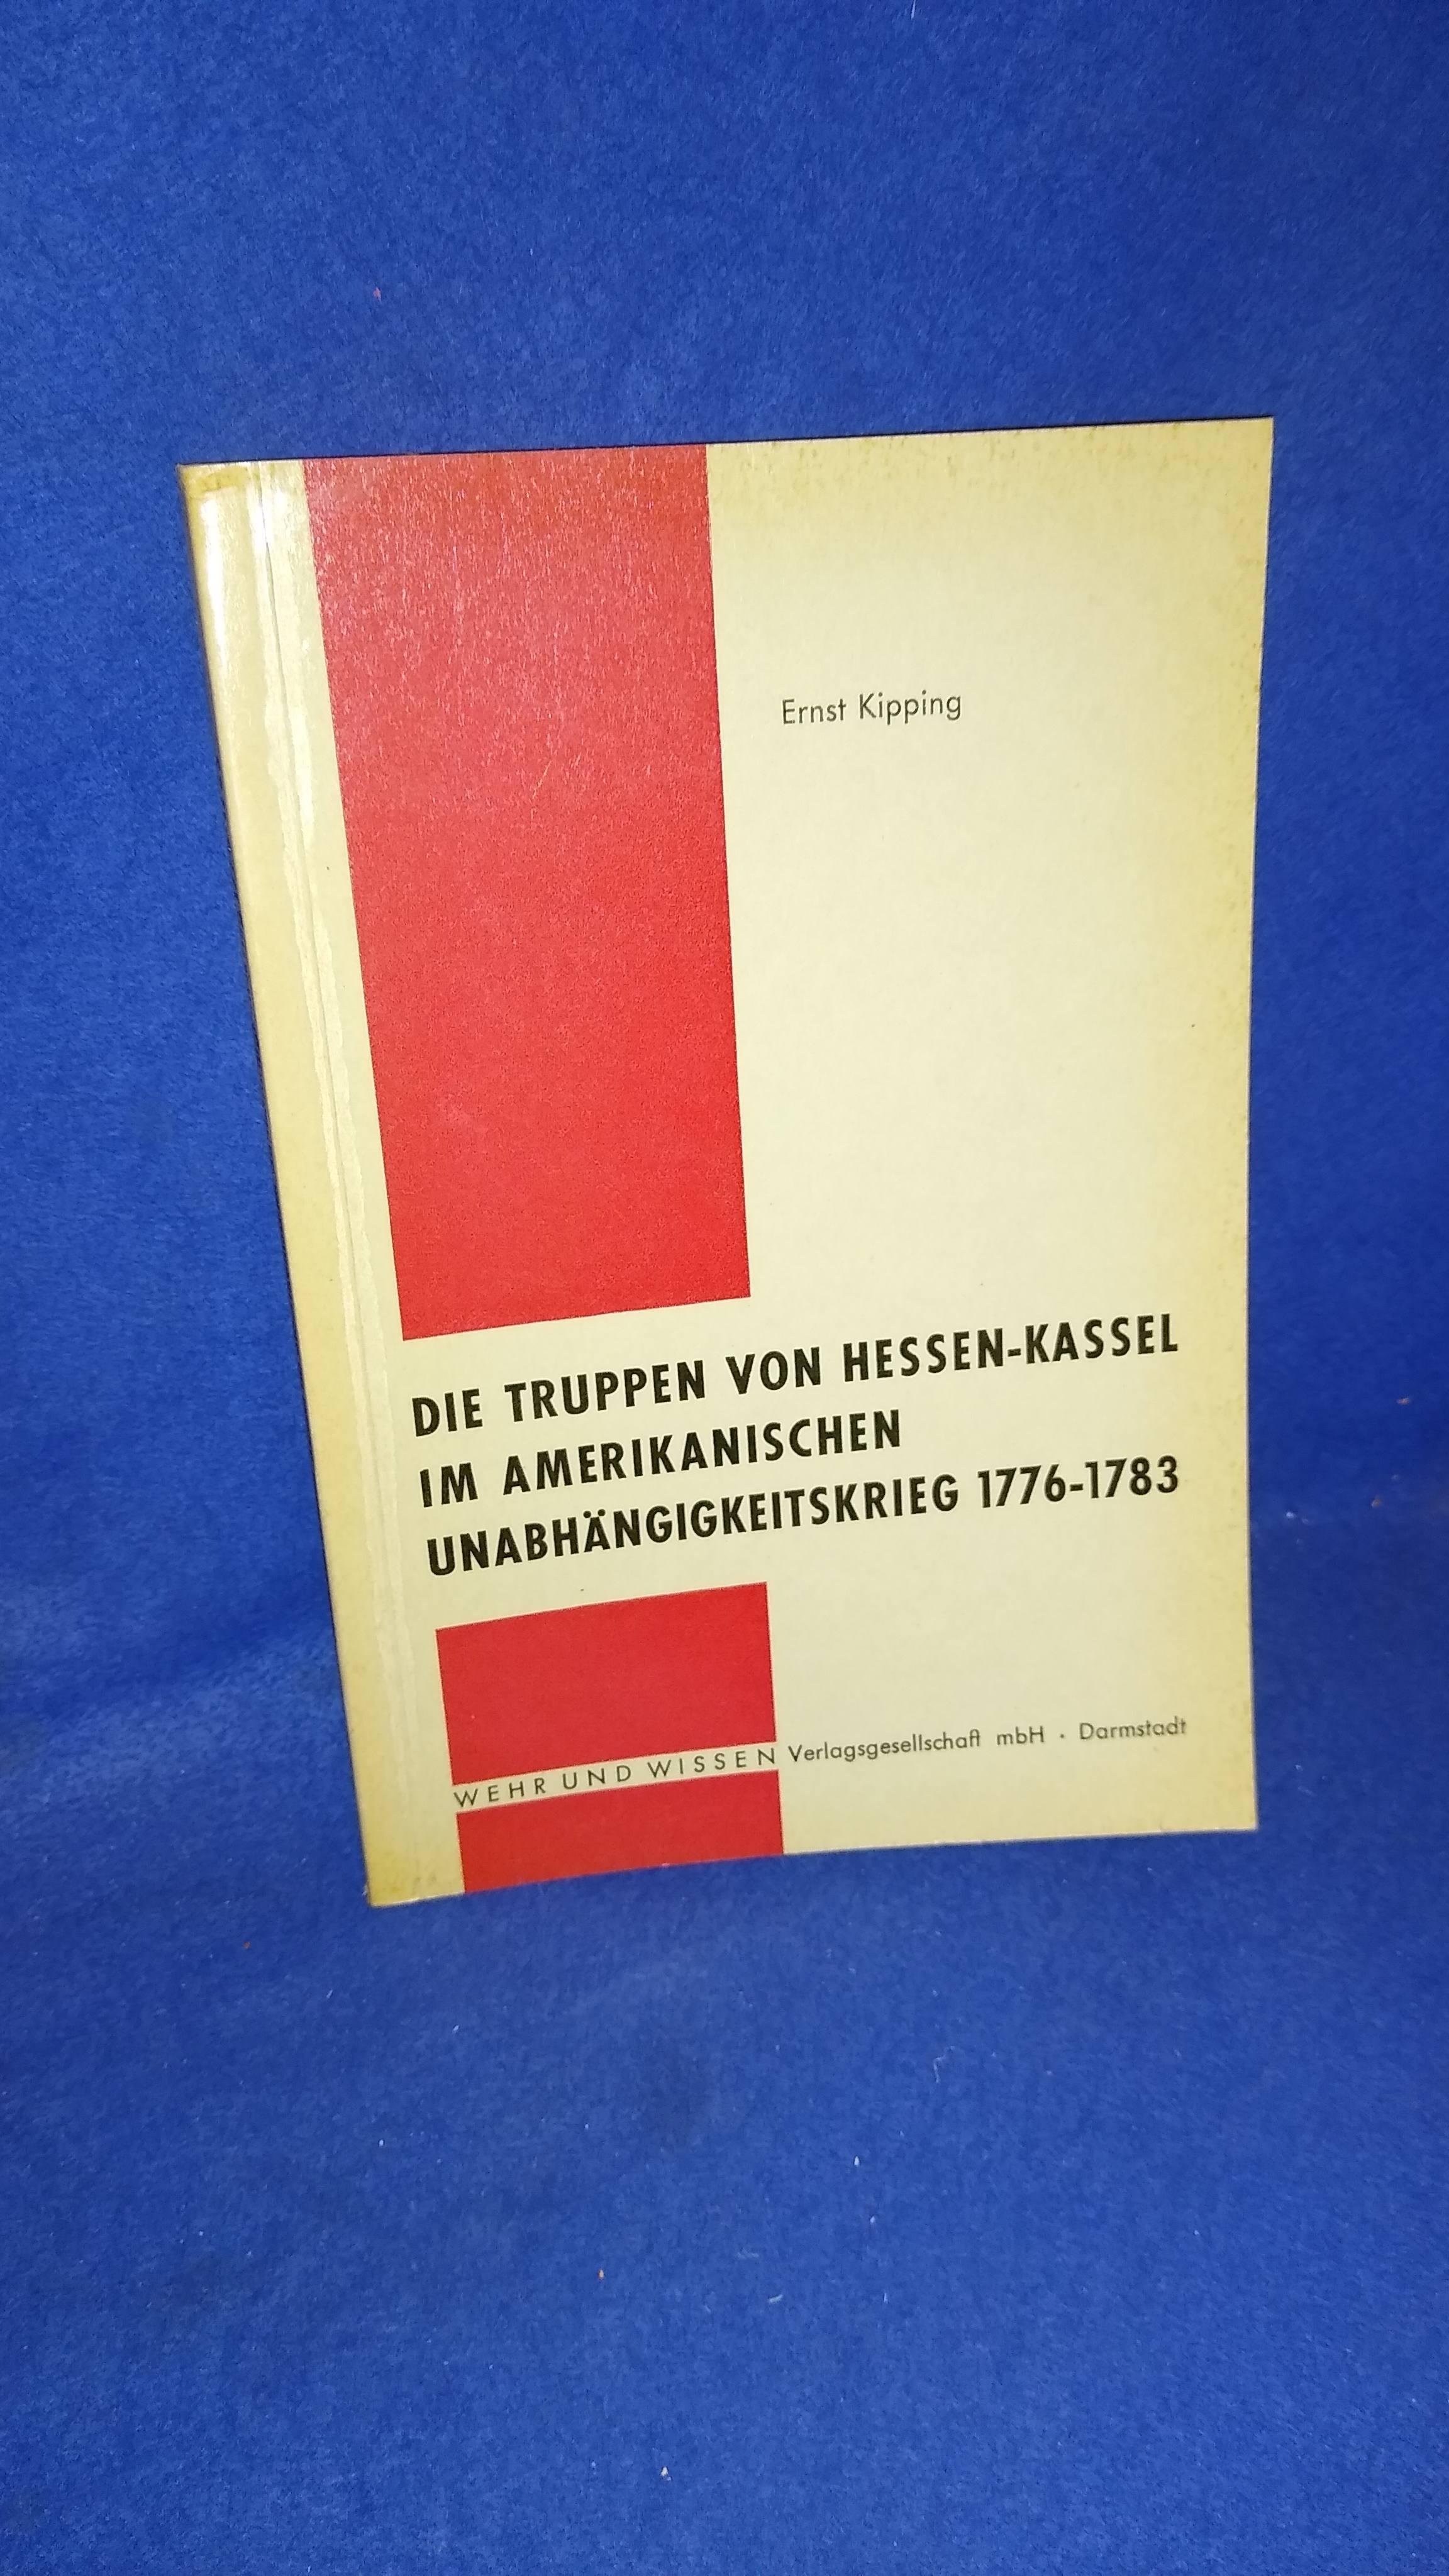 Die Truppen von Hessen-Kassel im Amerikanischen Unabhängigkeitskrieg 1776-1783. Vergriffenes Exemplar!